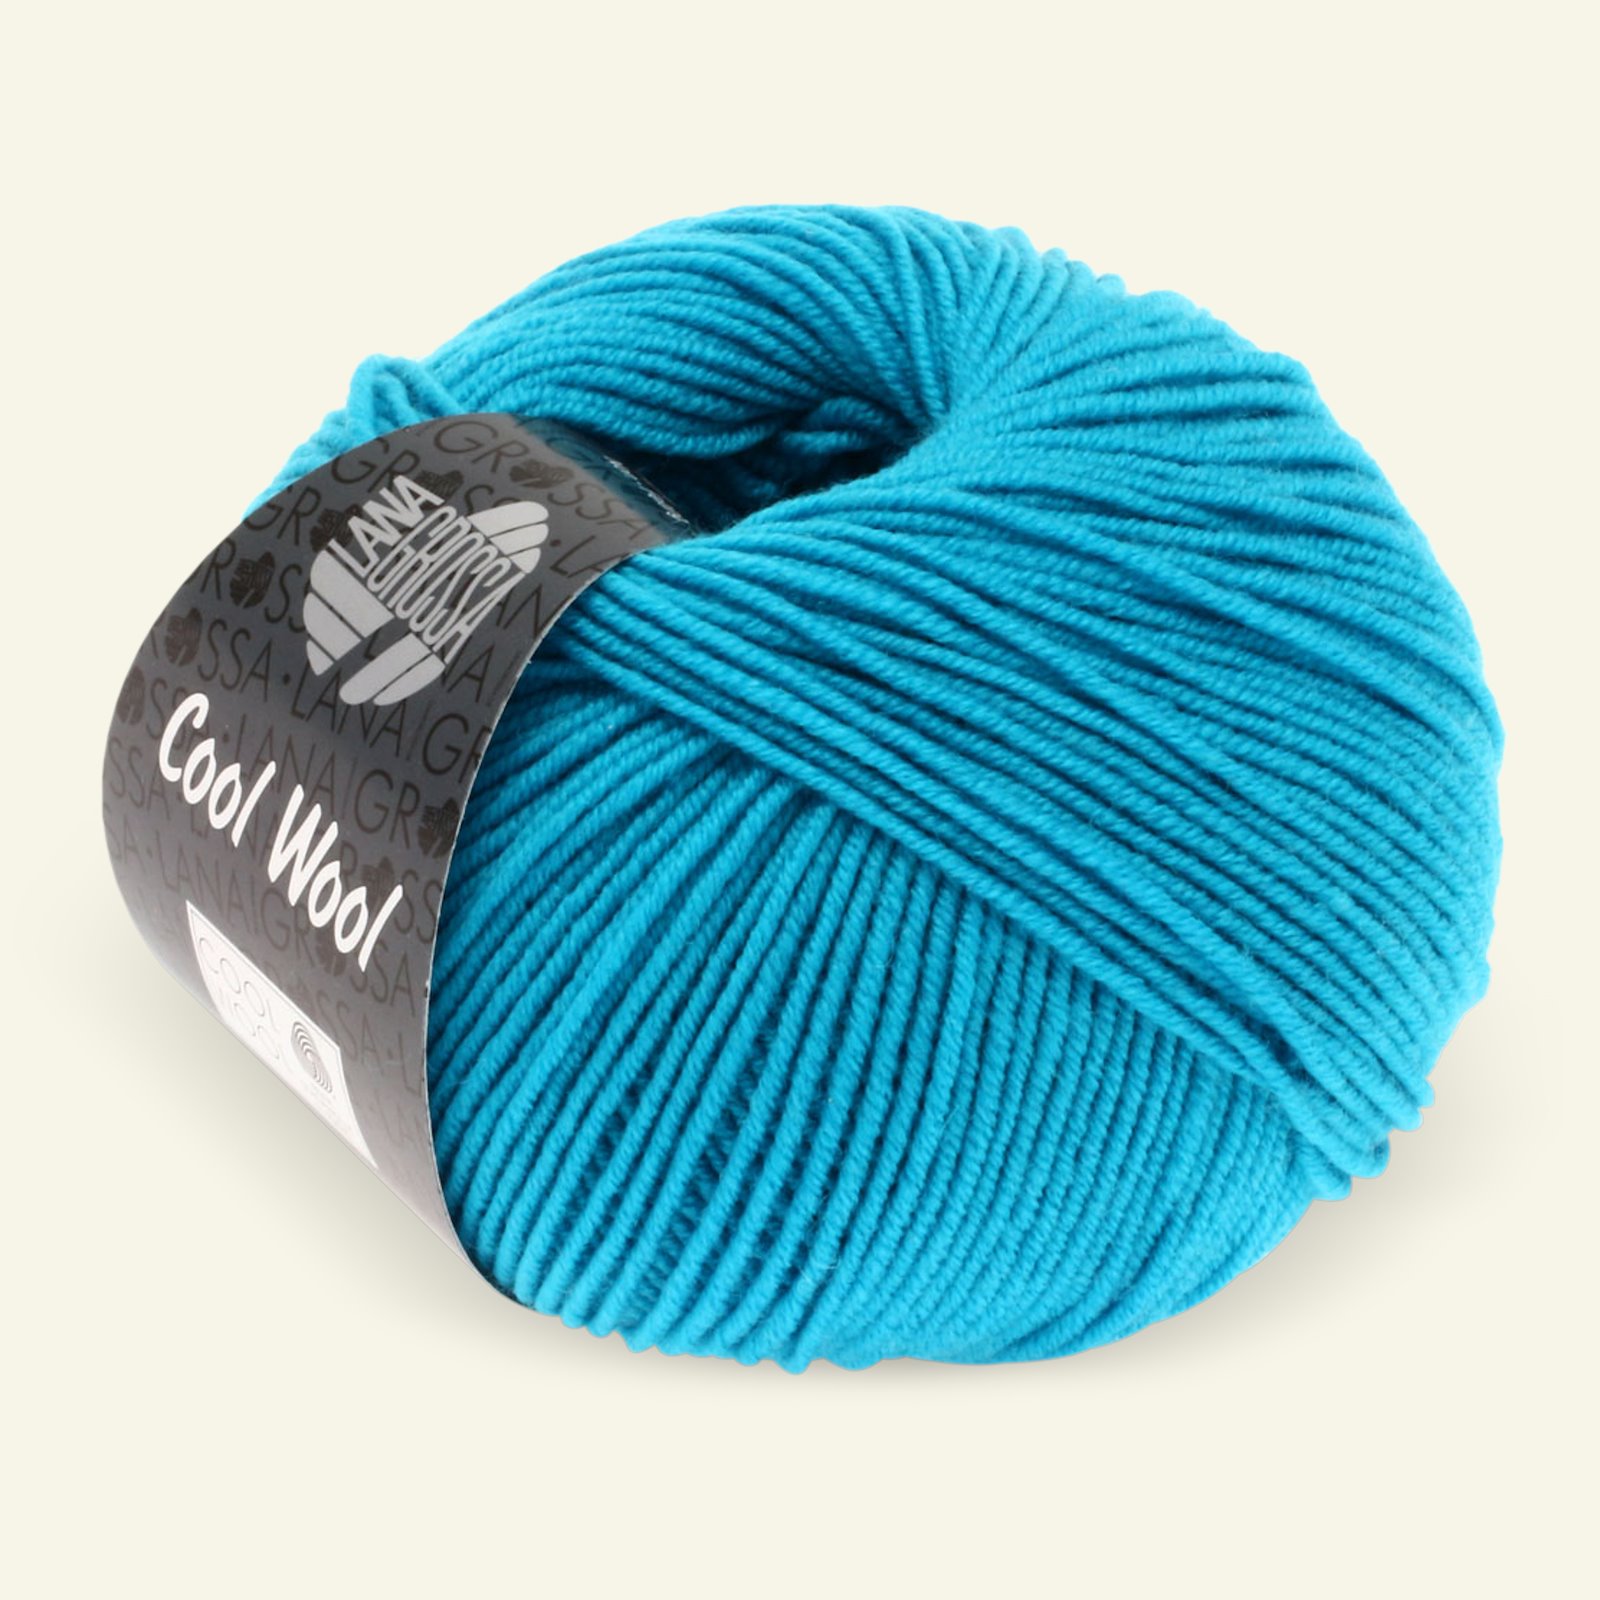 Lana Grossa, extrafine merino wool yarn "Cool Wool", dark turquoise 90001124_pack